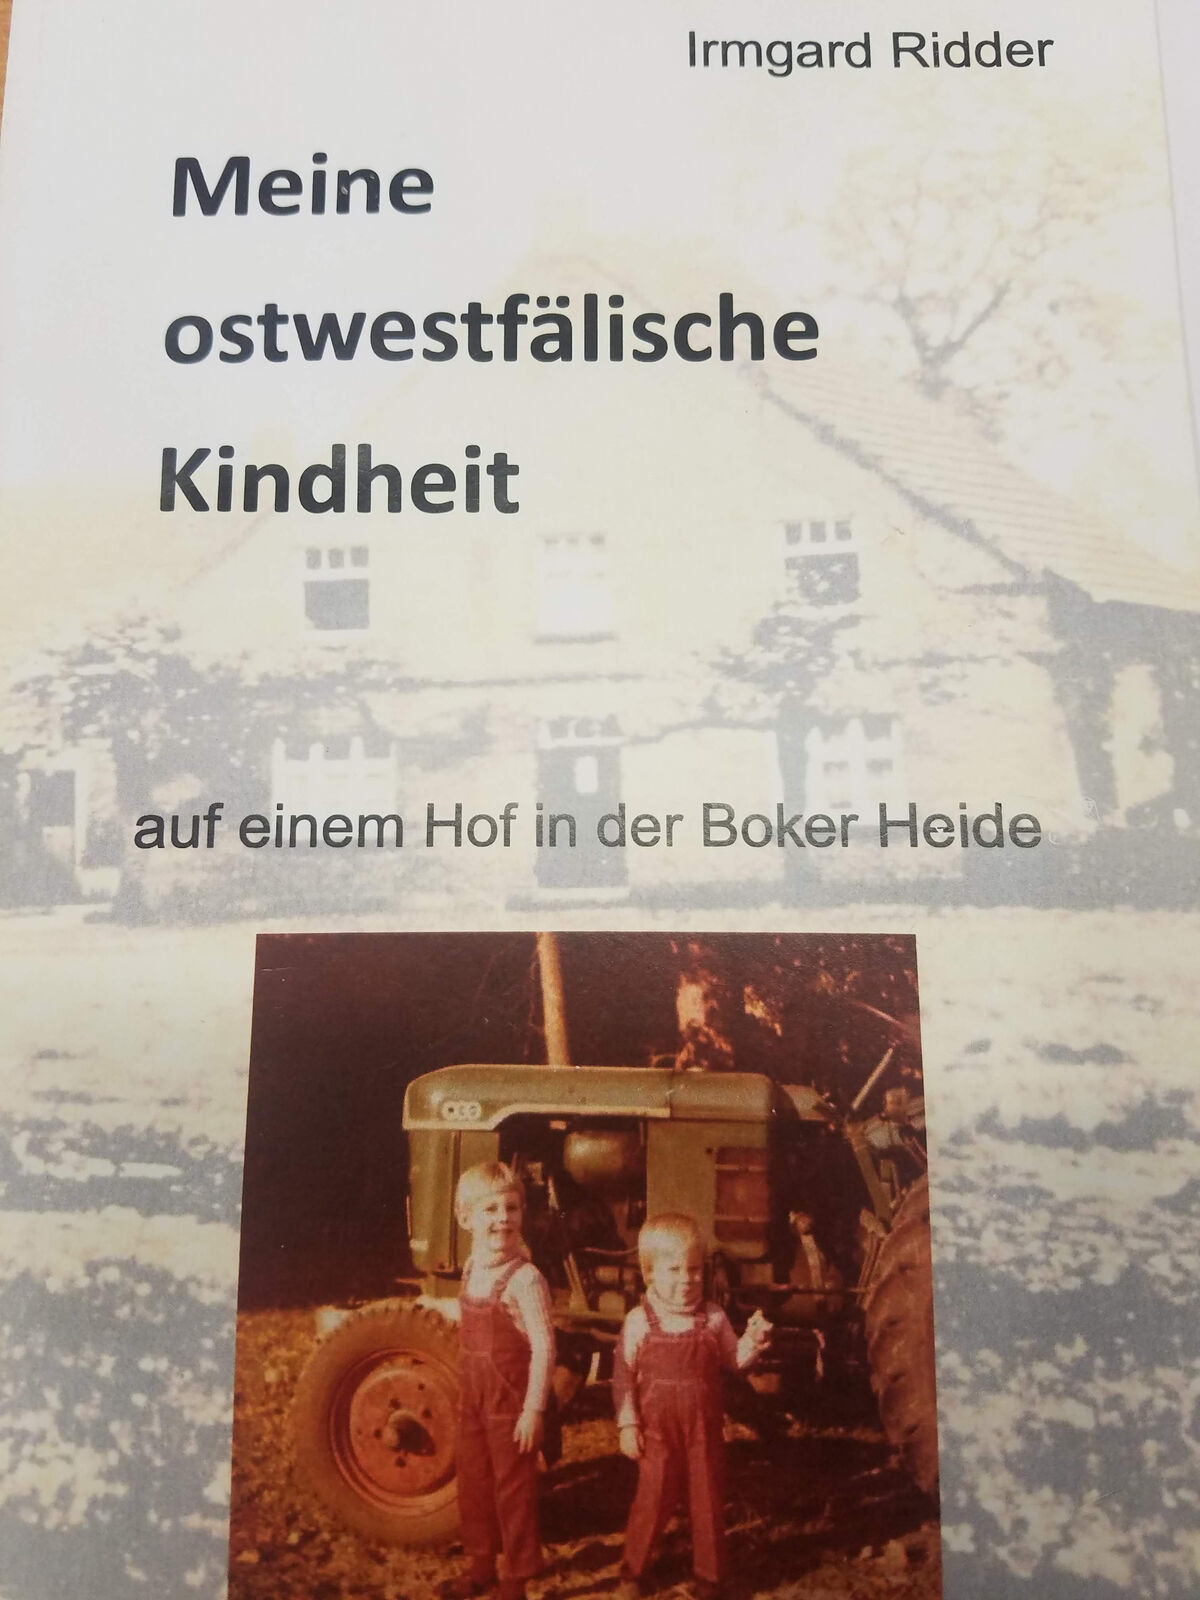 Buch "Meine Ostwestfälische Kindheit" von Irmgard Ridder